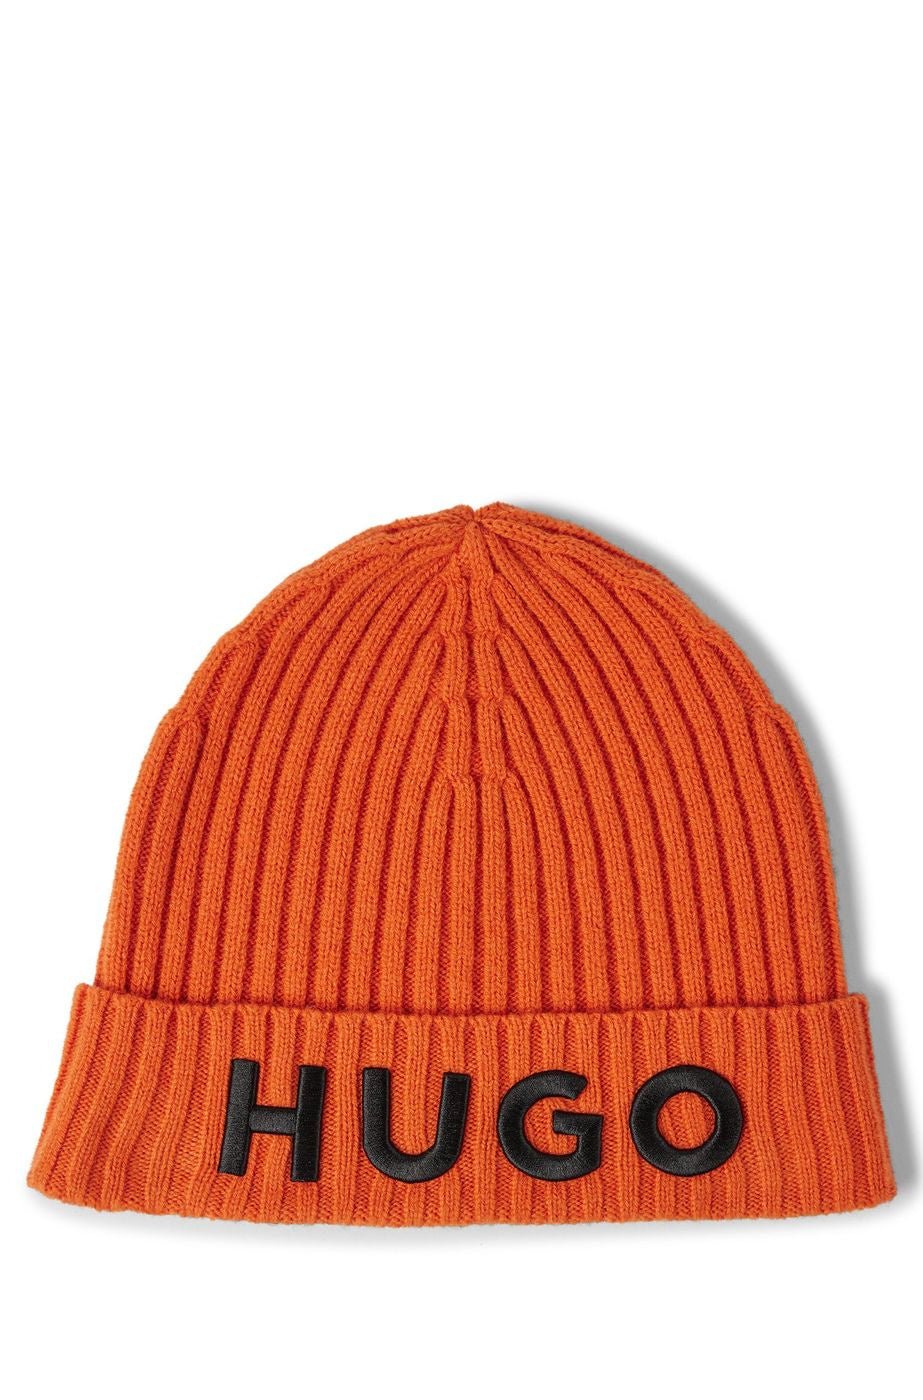 Hugo Boss hat | Crush Store – Crush Store Srls